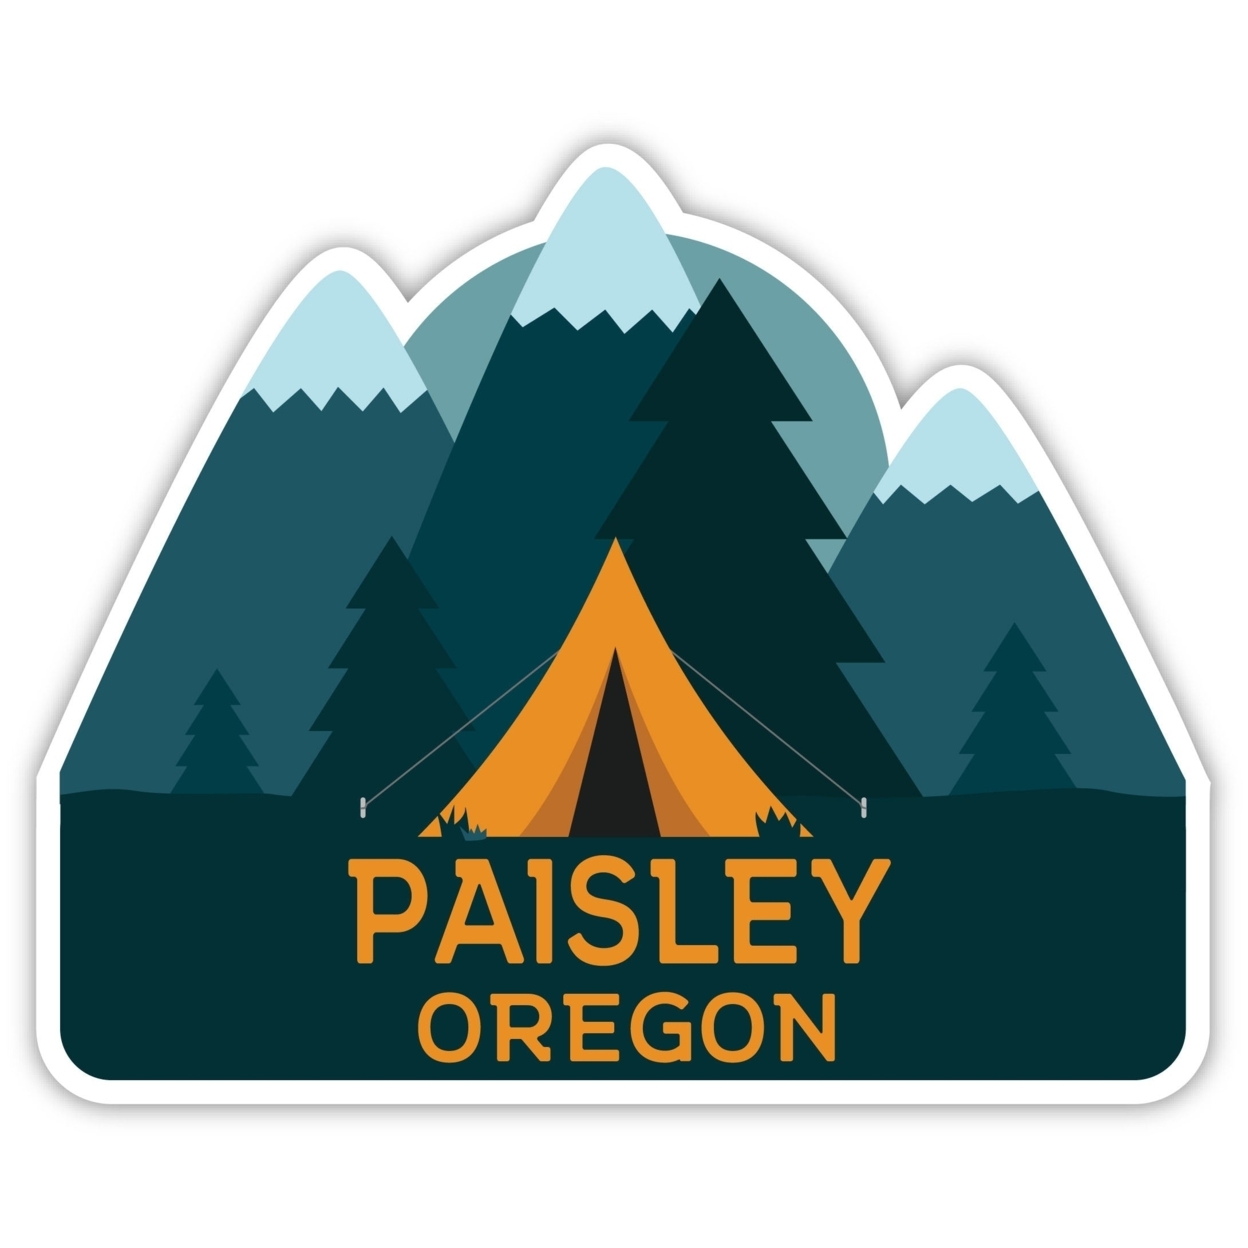 Paisley Oregon Souvenir Decorative Stickers (Choose Theme And Size) - Single Unit, 4-Inch, Tent